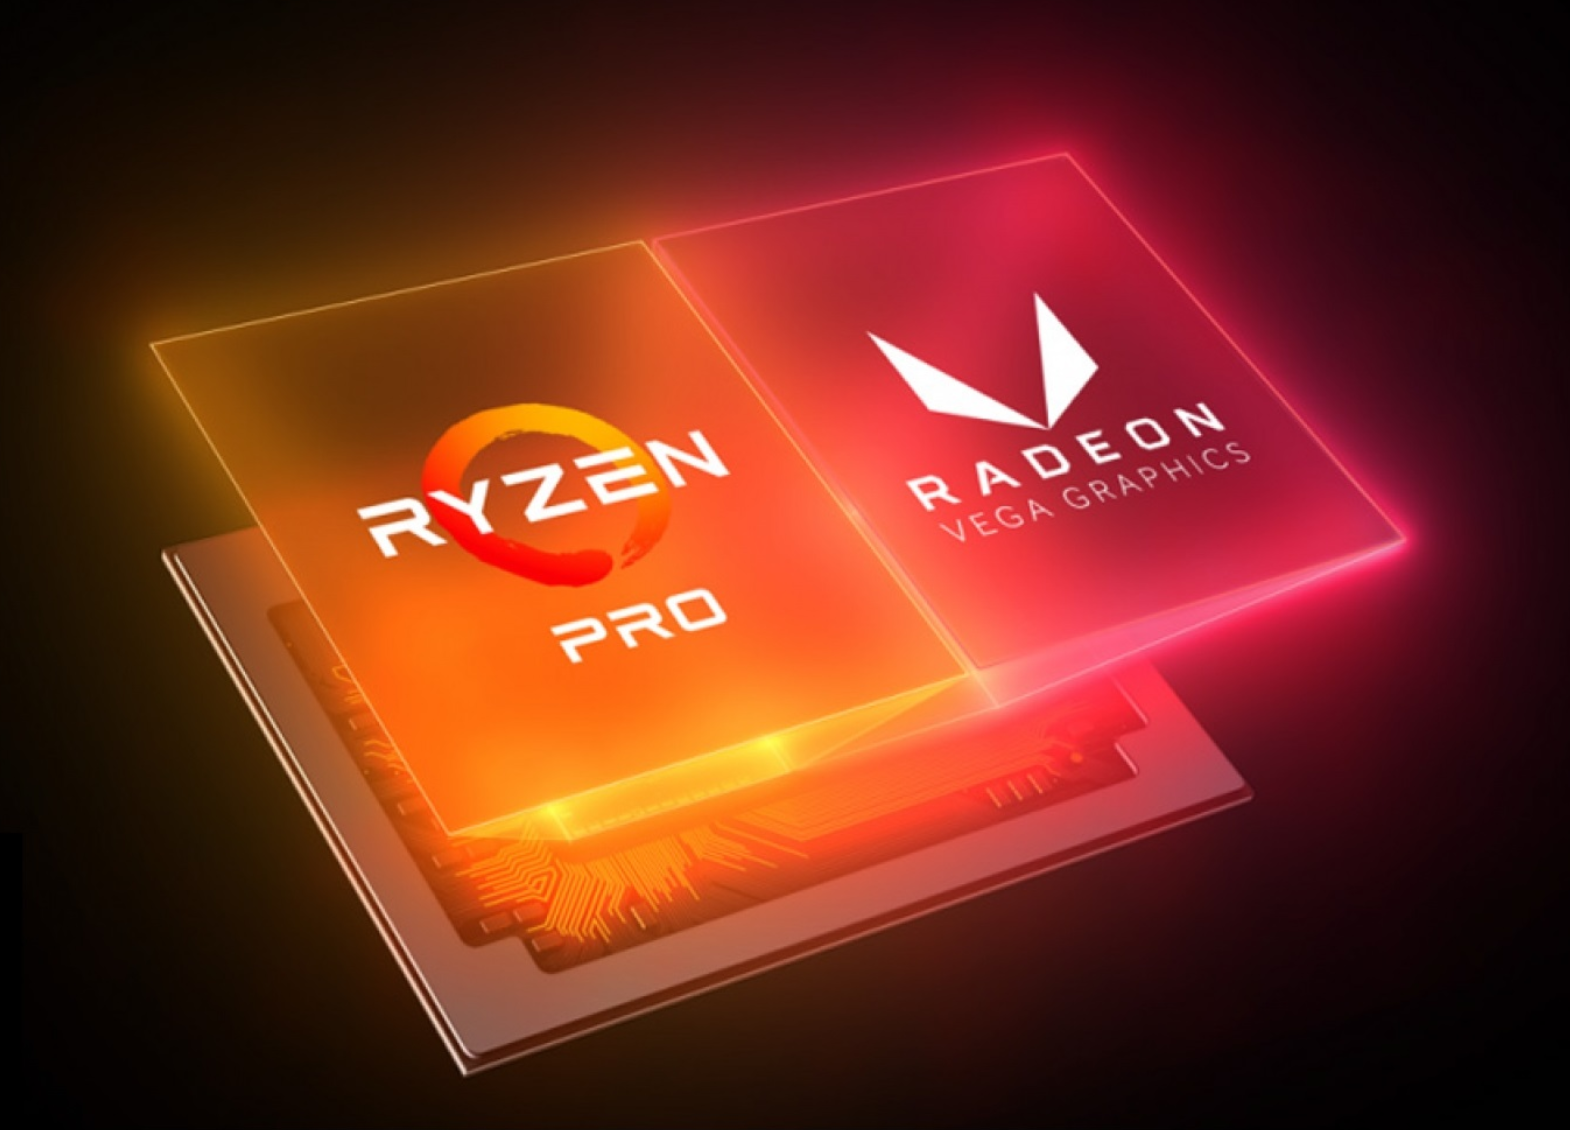 Ryzen Pro with built-in Radeon Vega Graphics